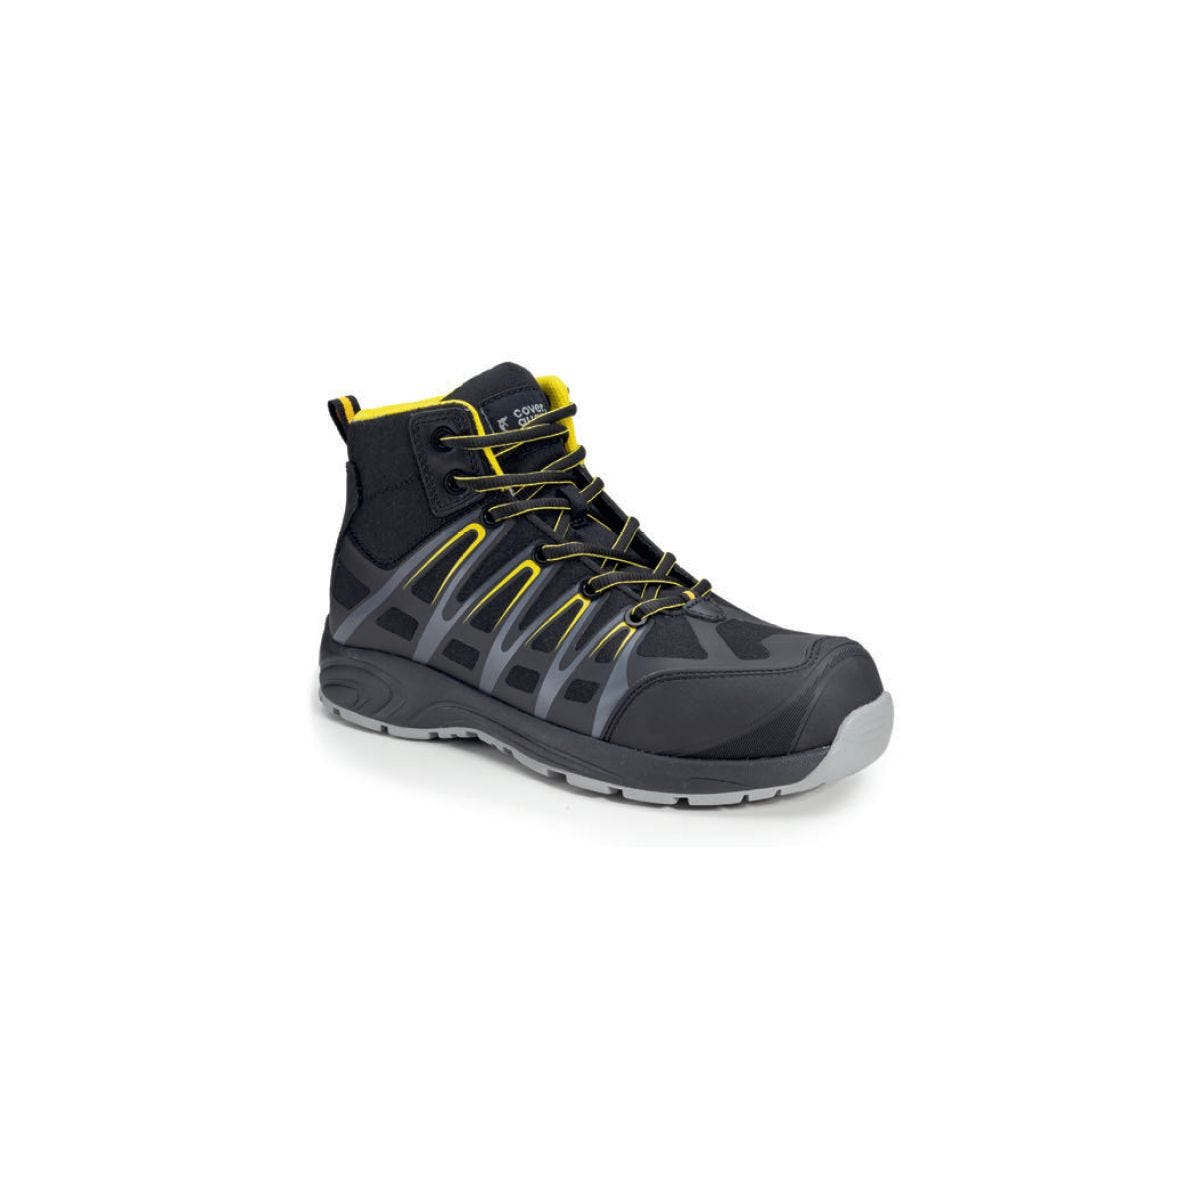 Chaussures de sécurité hautes ALUNI S3 noir et jaune - Coverguard - Taille 37 0